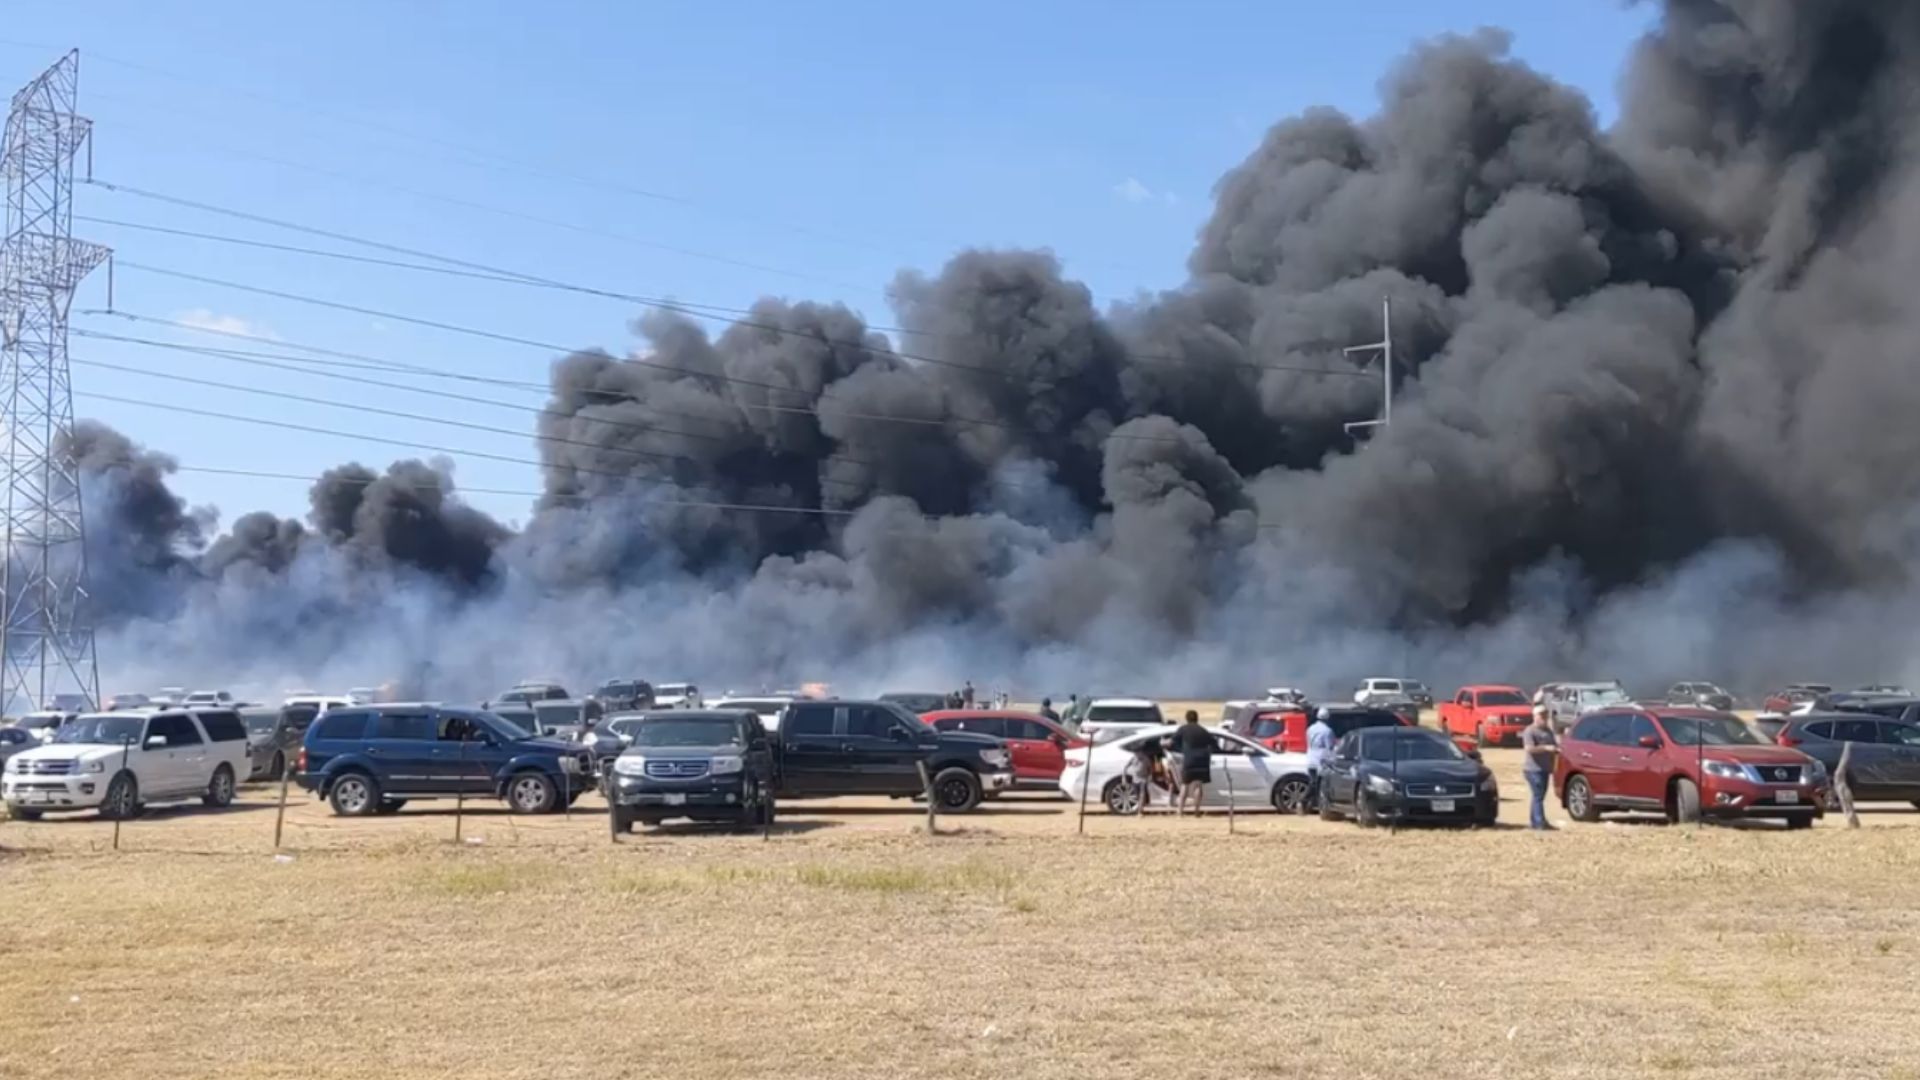 Texas Pumpkin Patch Fire Burns Dozens Of Cars